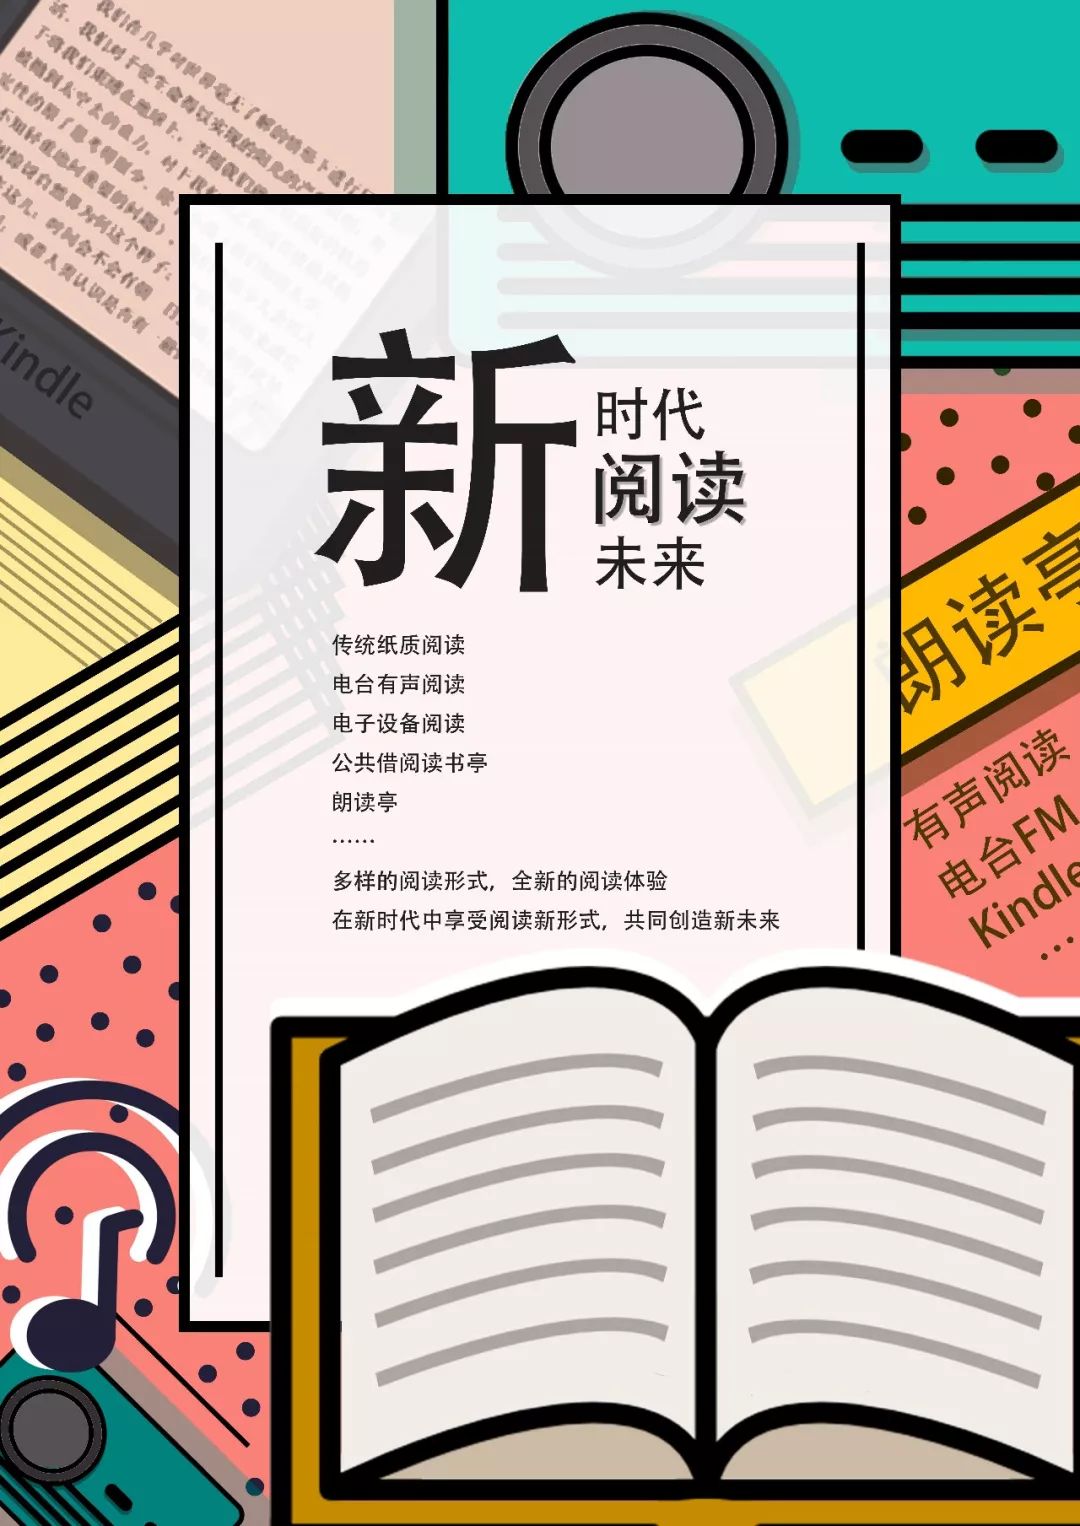 湖北省首届"图书馆杯"主题海报创意设计大赛获奖名单公布